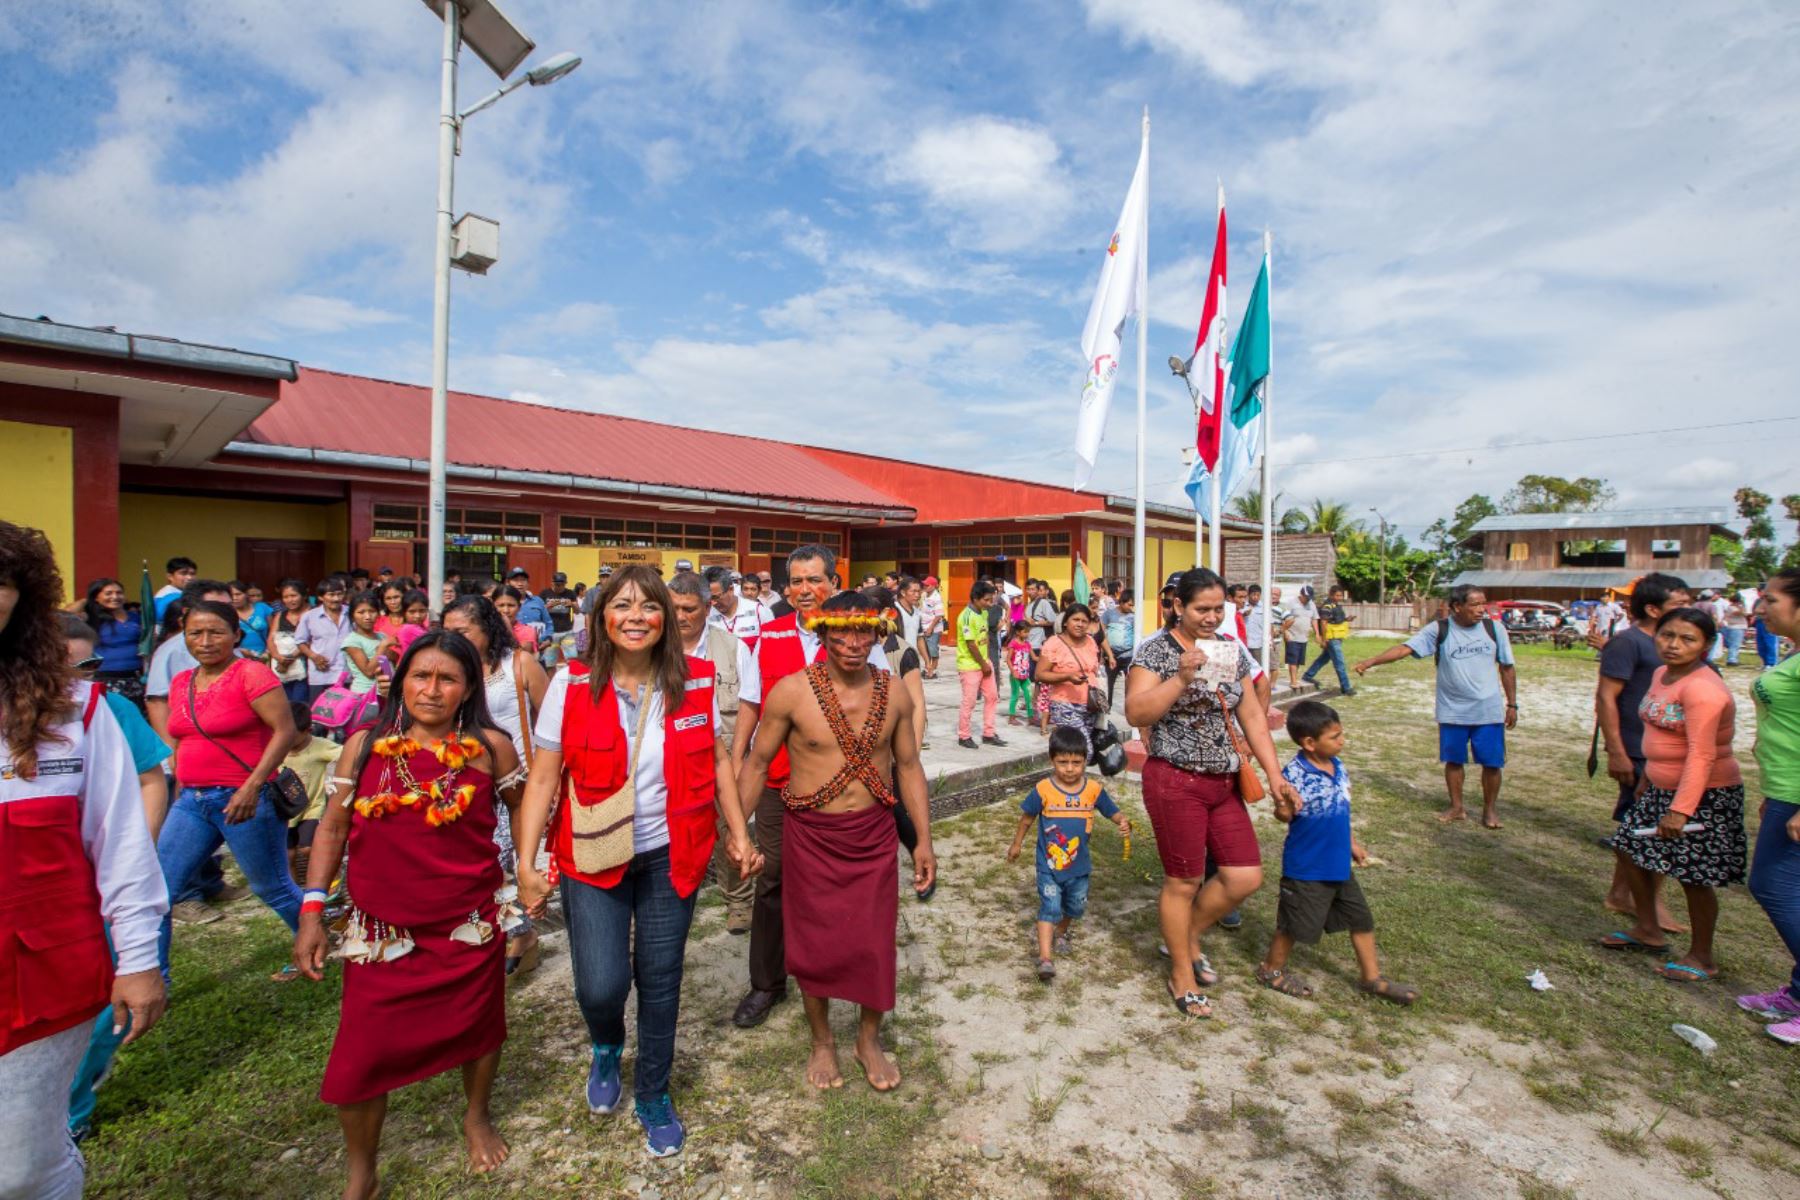 Poblaciones de la Amazonía en situación de pobreza son prioridad para el Midis, afirma ministra Liliana La Rosa. ANDINA/Difusión